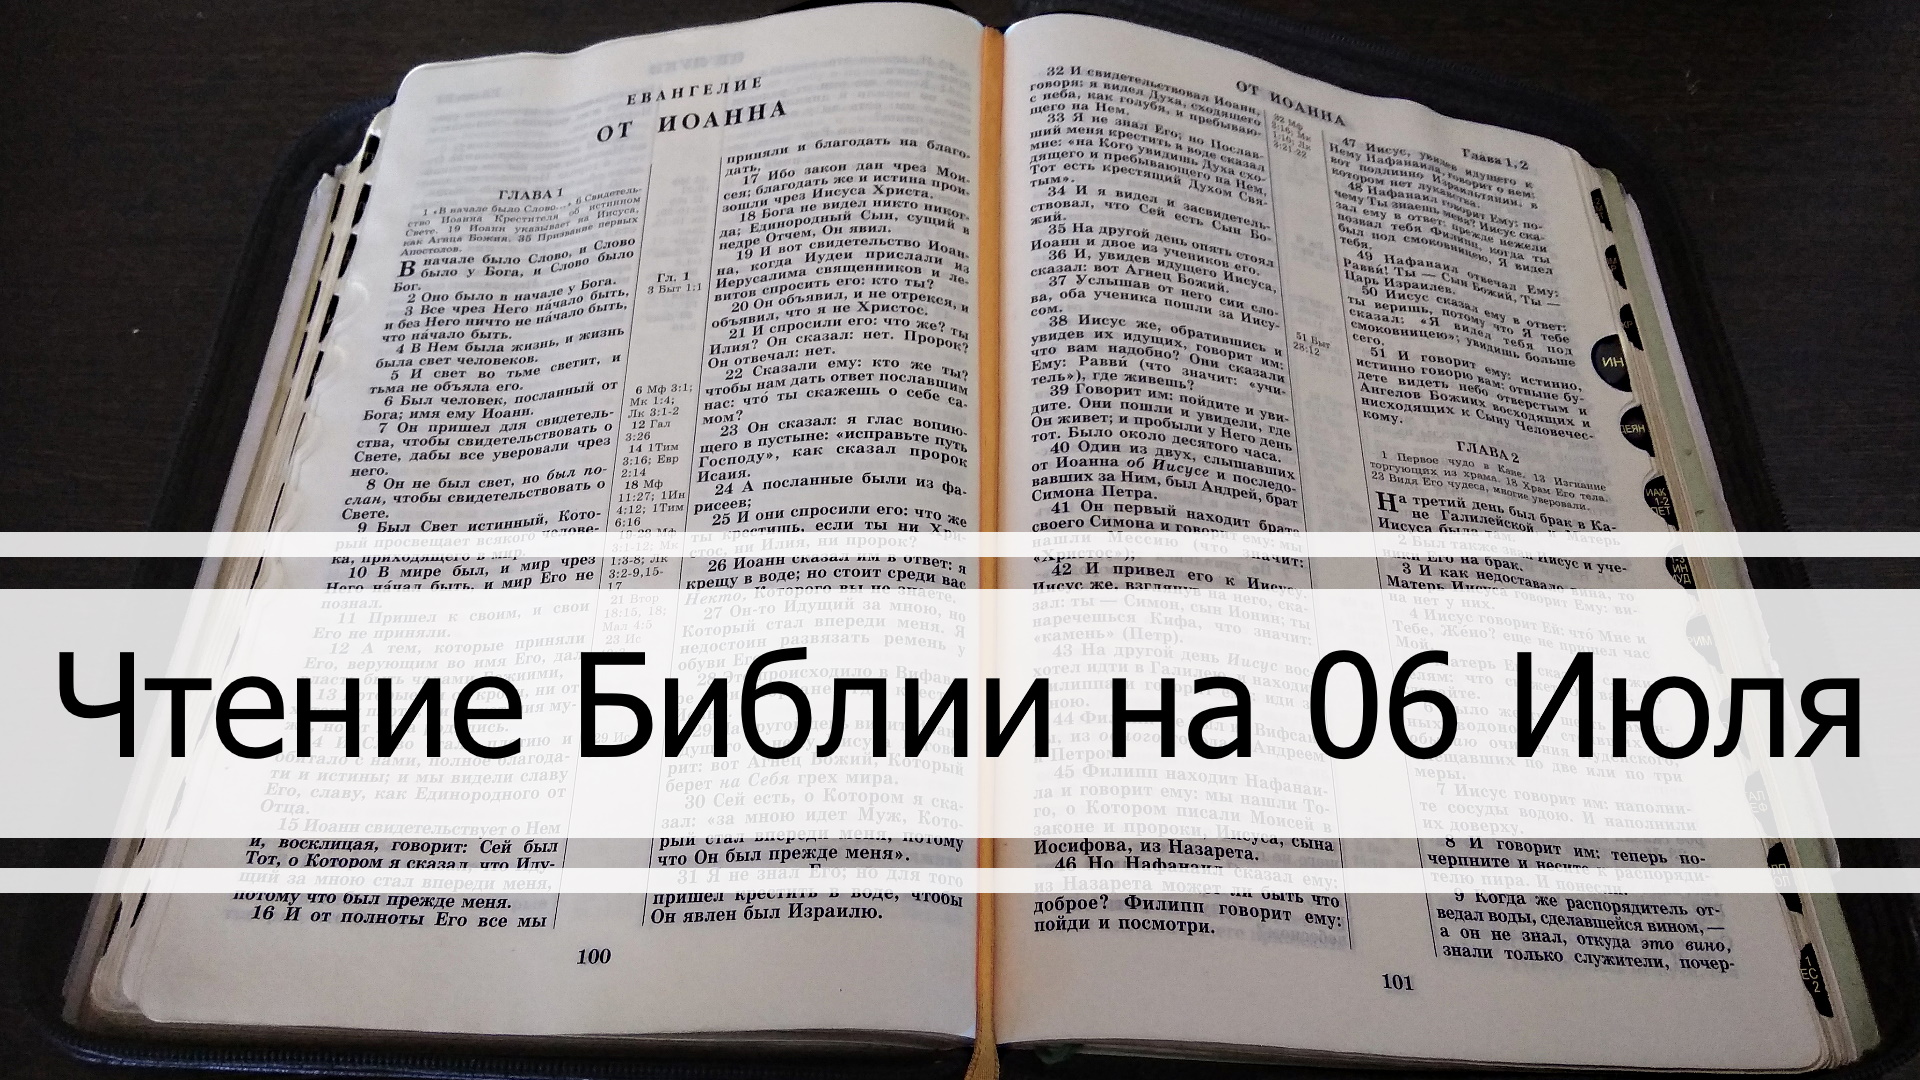 Чтение Библии на 06 Июля: Псалом 5, Евангелие от Матфея 5, 4 Книга Царств 1, 2